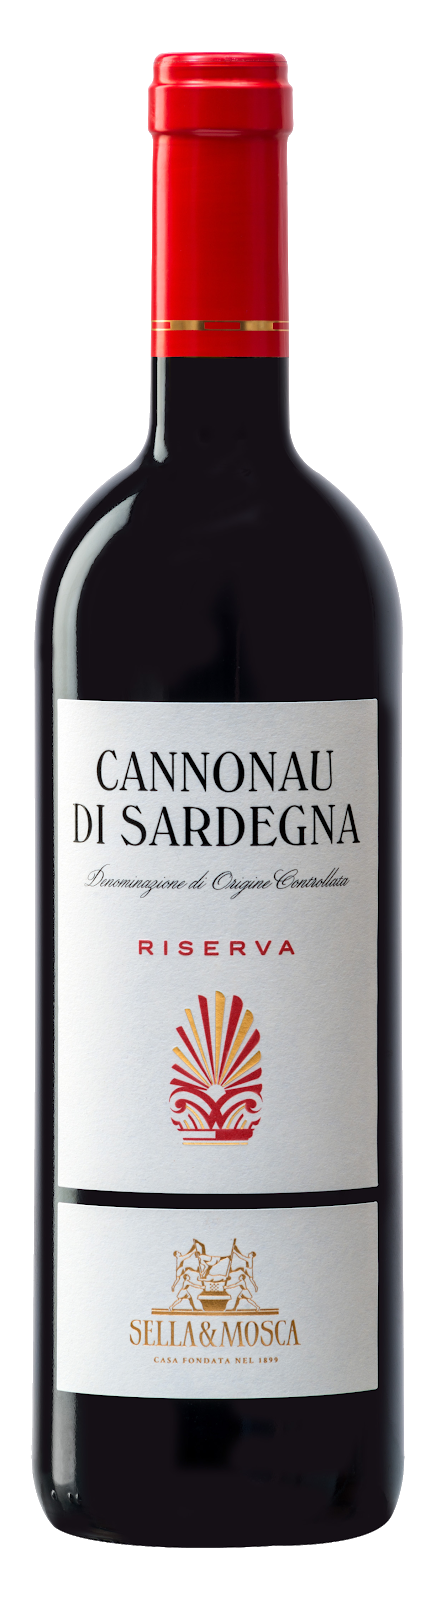 Cannonau Di Sardegna Riserva